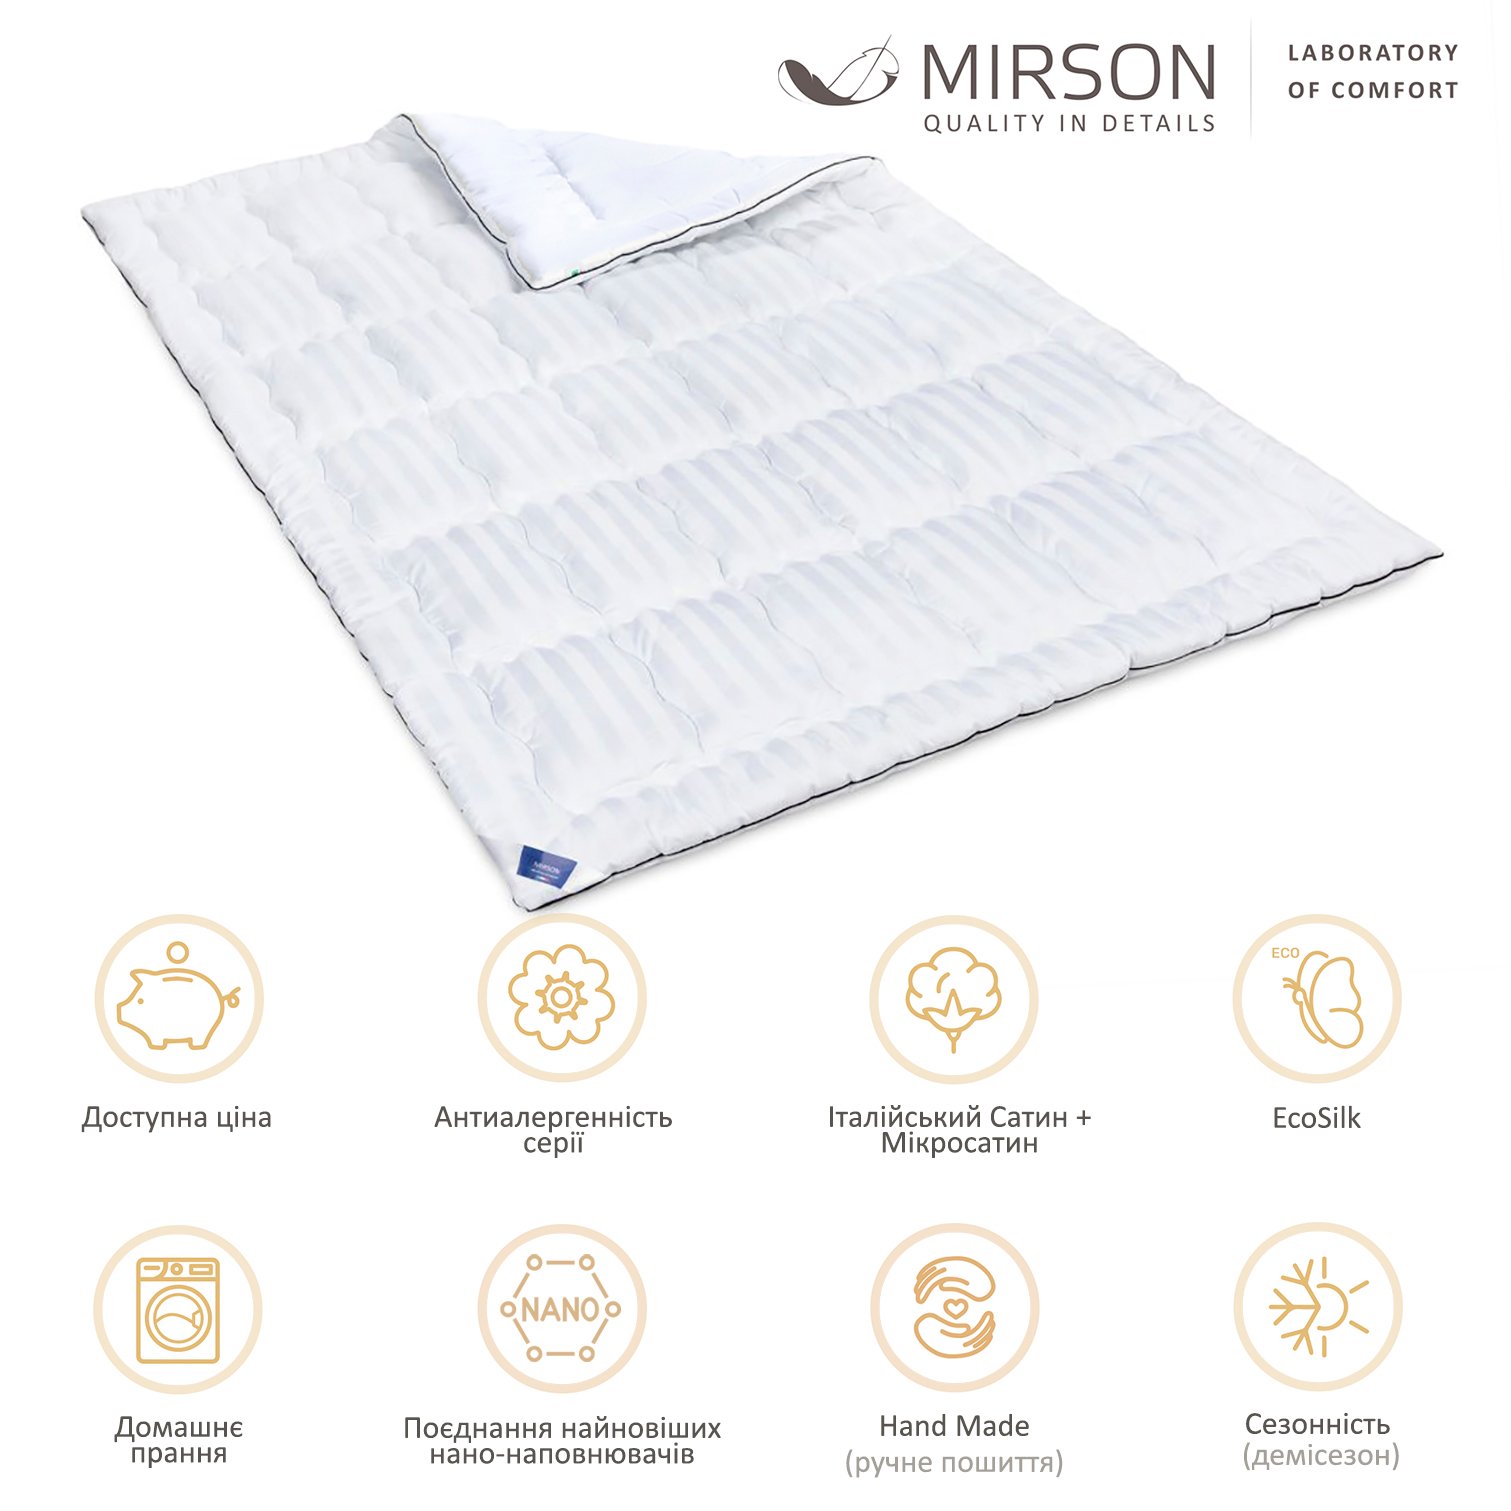 Одеяло антиаллергенное MirSon Royal Pearl Hand Made EcoSilk №0553, демисезонное, 200x220 см, белое - фото 5